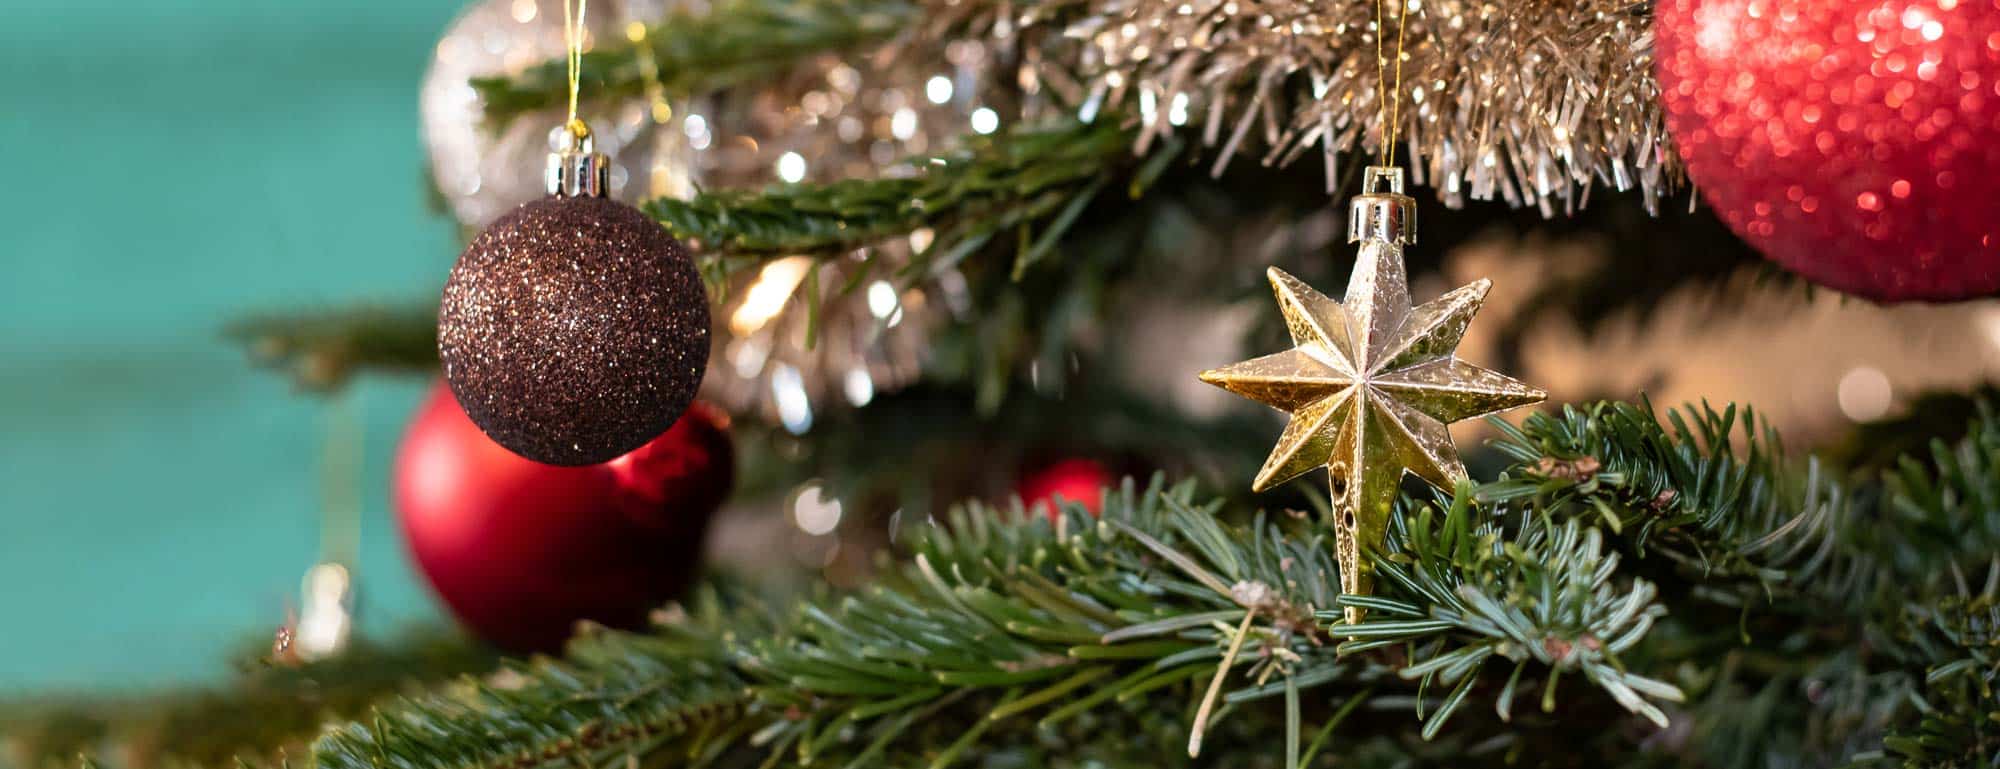 Closeup of Christmas star ornament on Christmas tree